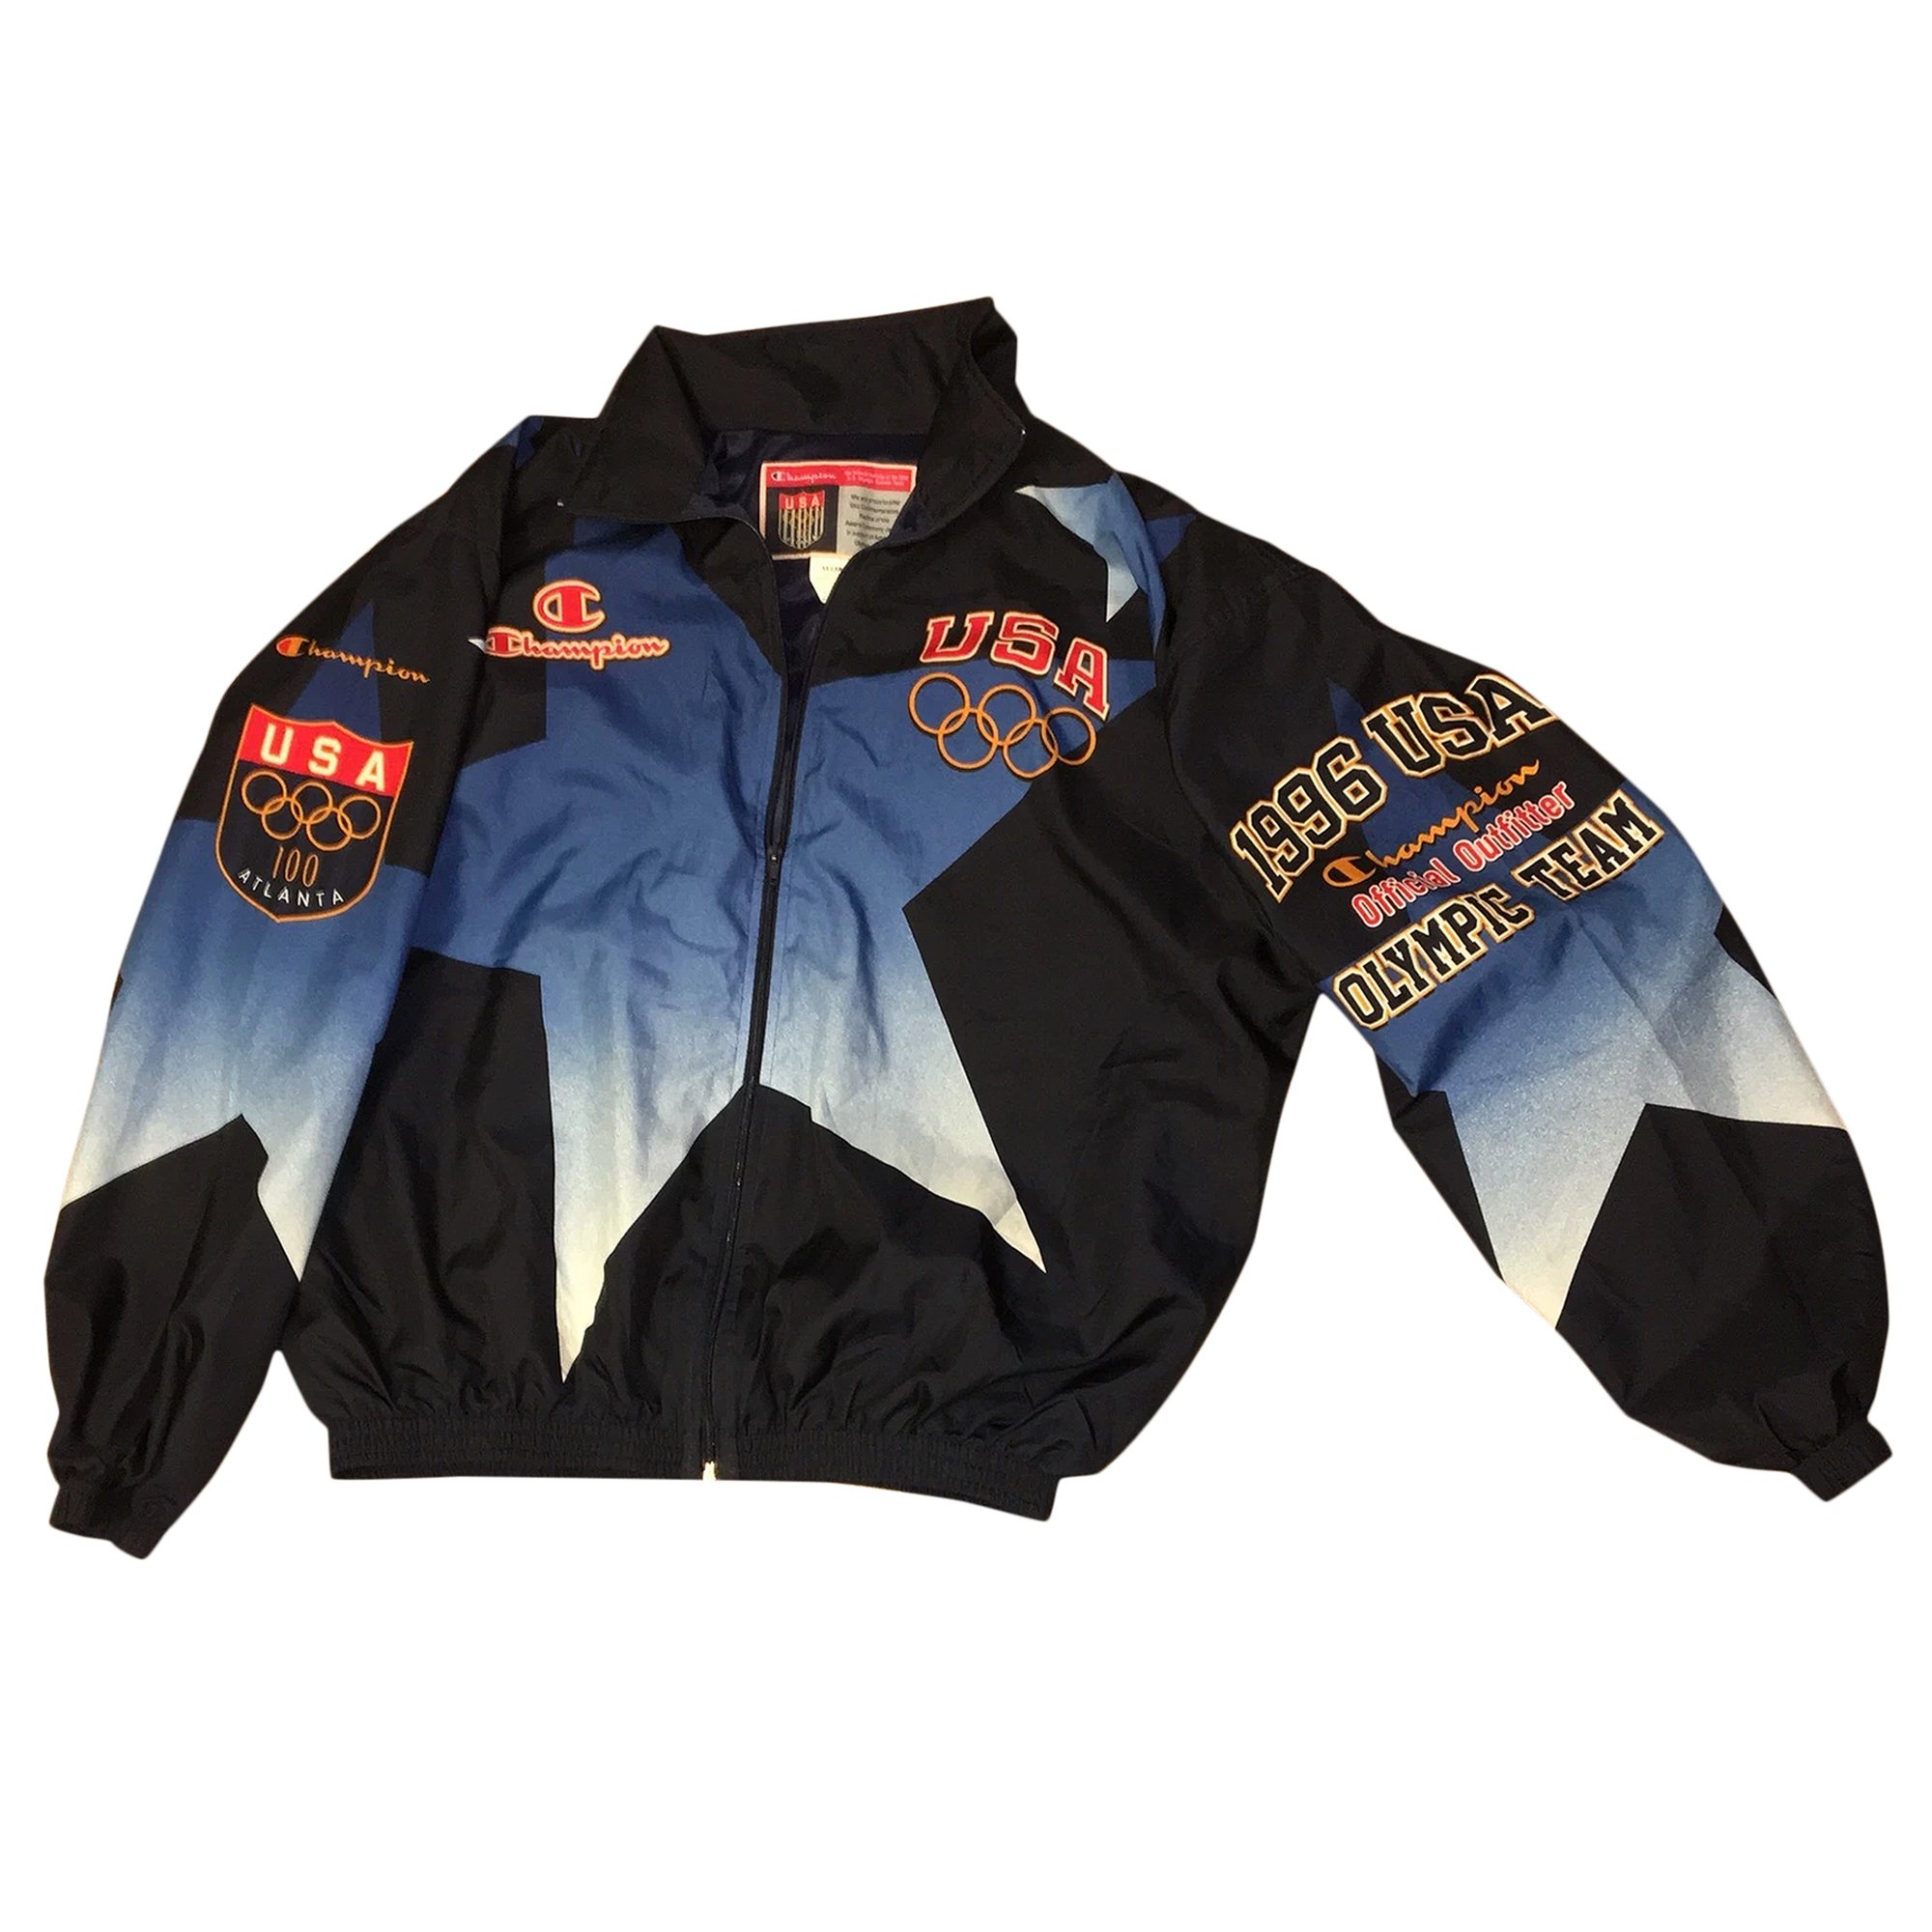 Buy Champion Vintage 1996 Olympics Team Jacket 'Black' - 0301